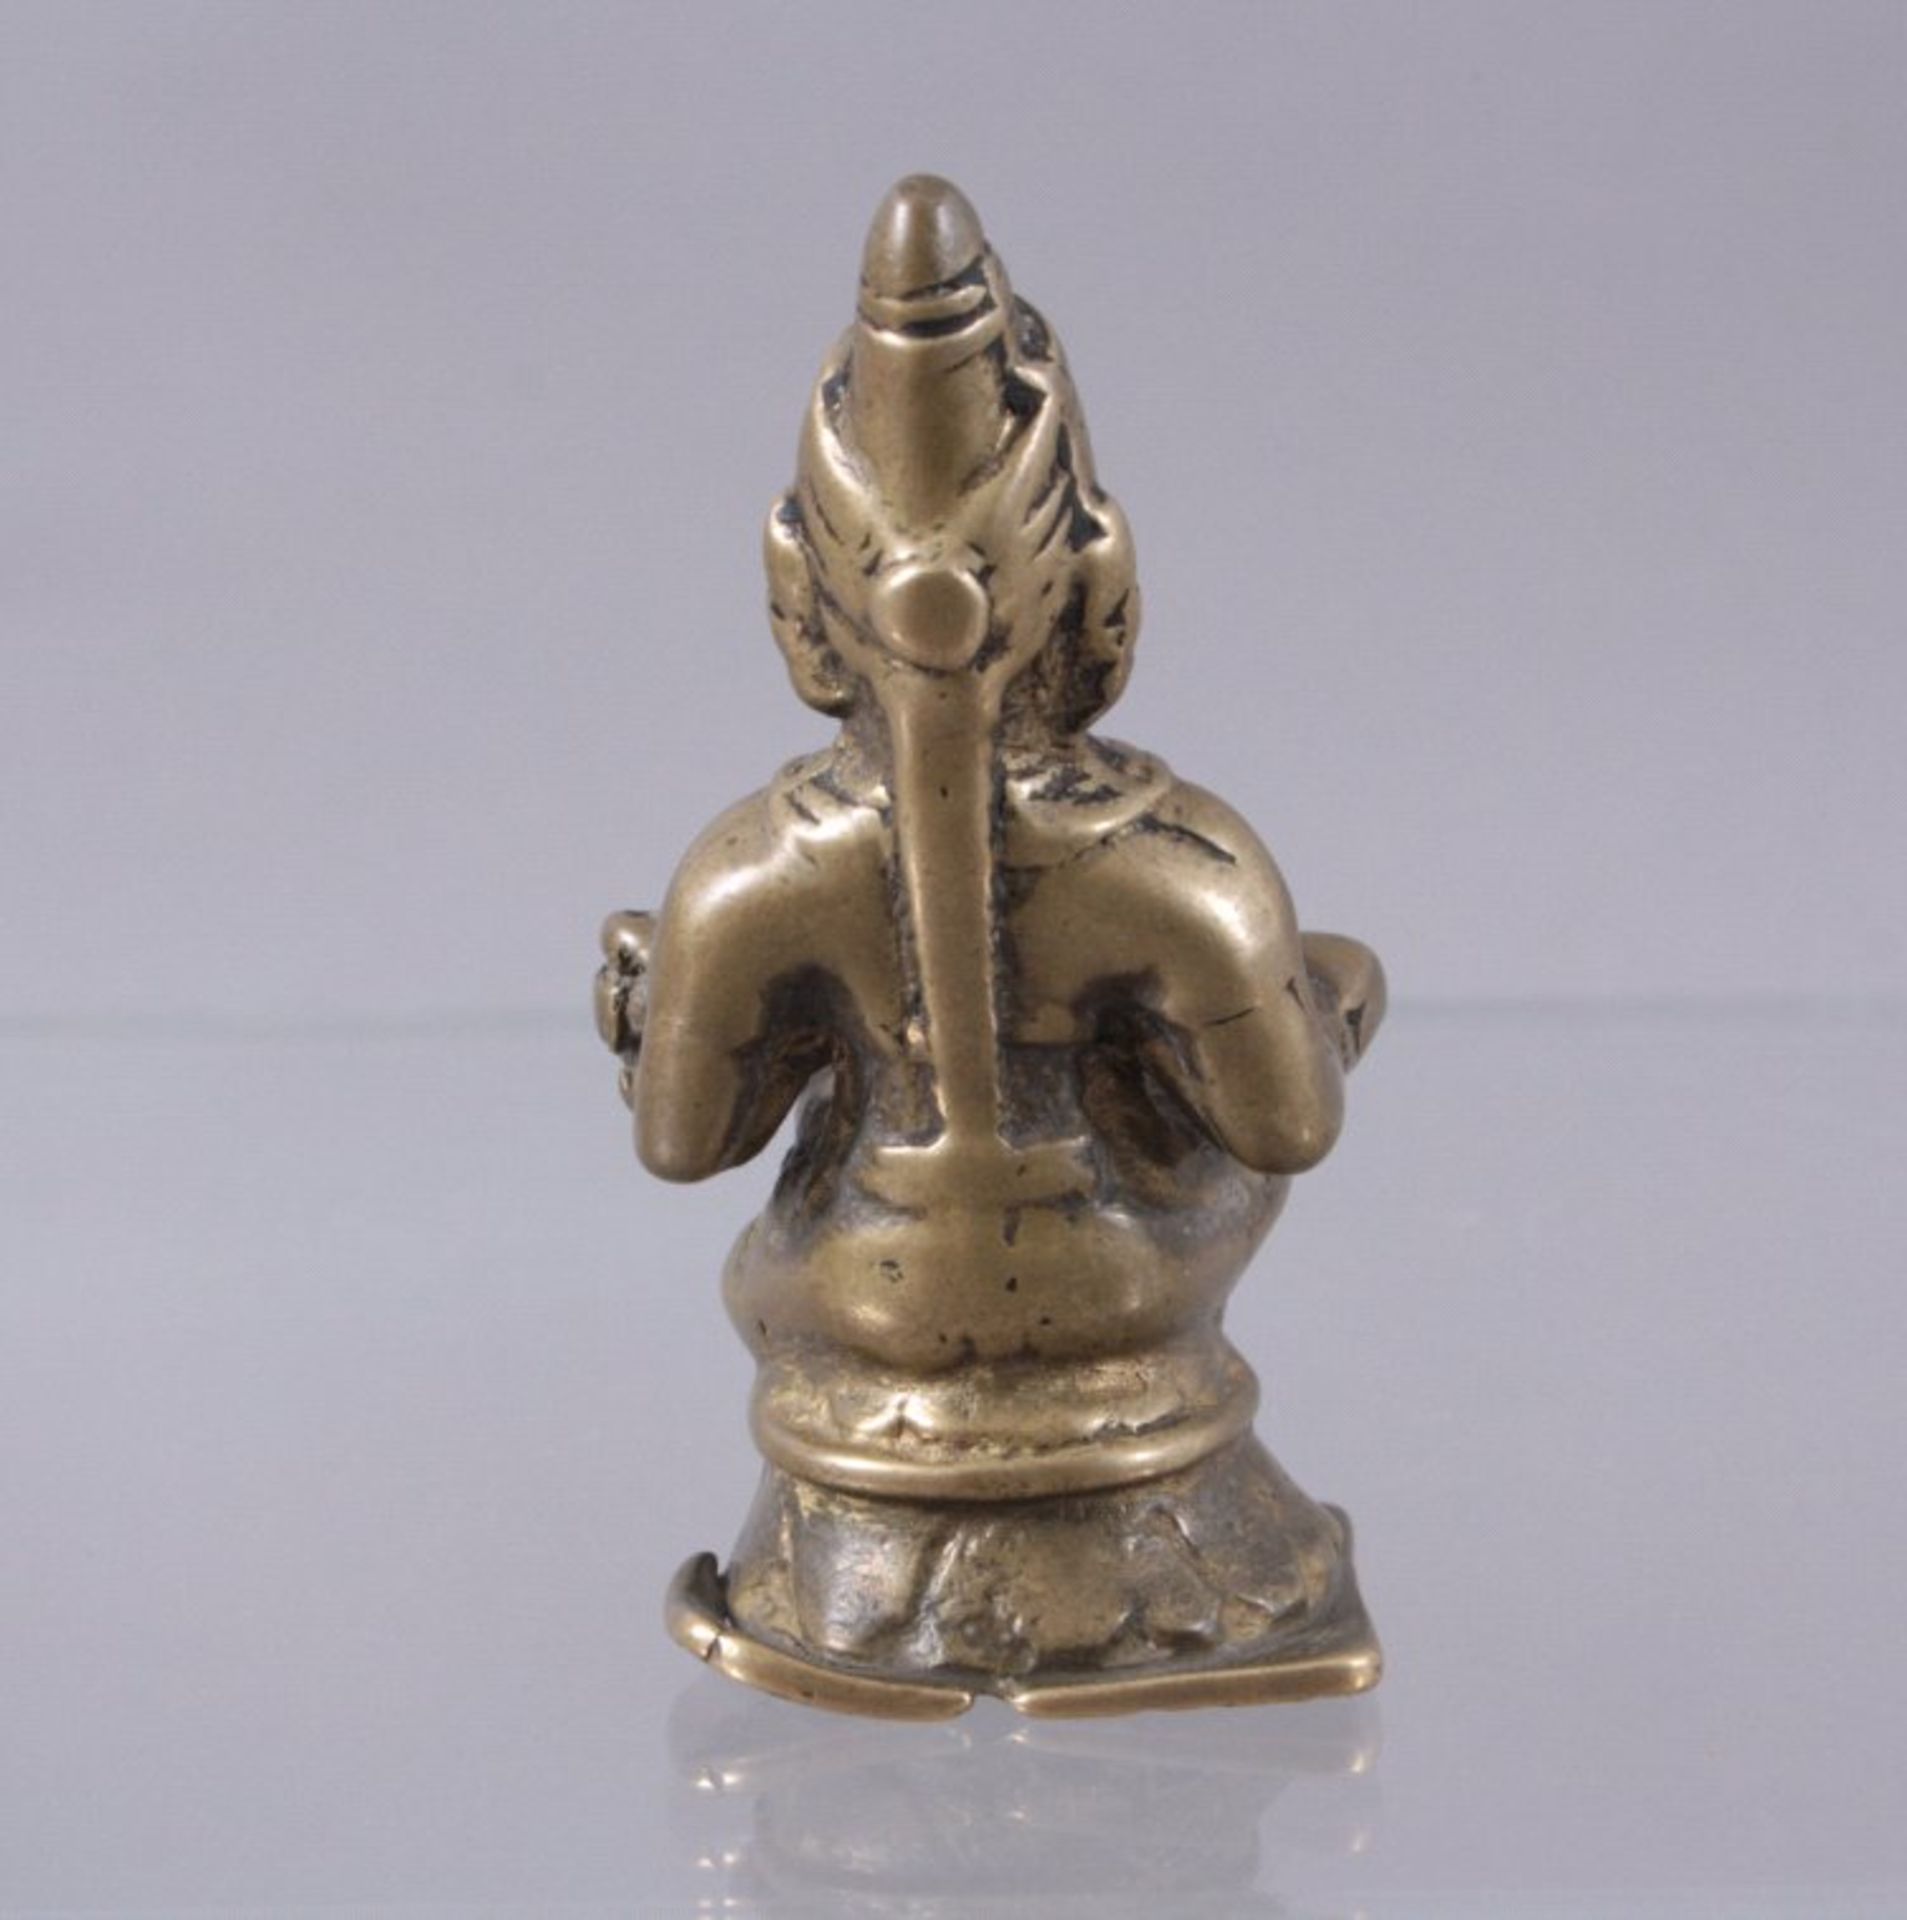 Bronzeskulptur, Indien 14./15. Jh.auf rundem Lotusthron sitzende Gottheit mit Zepter in derHand - Bild 2 aus 3